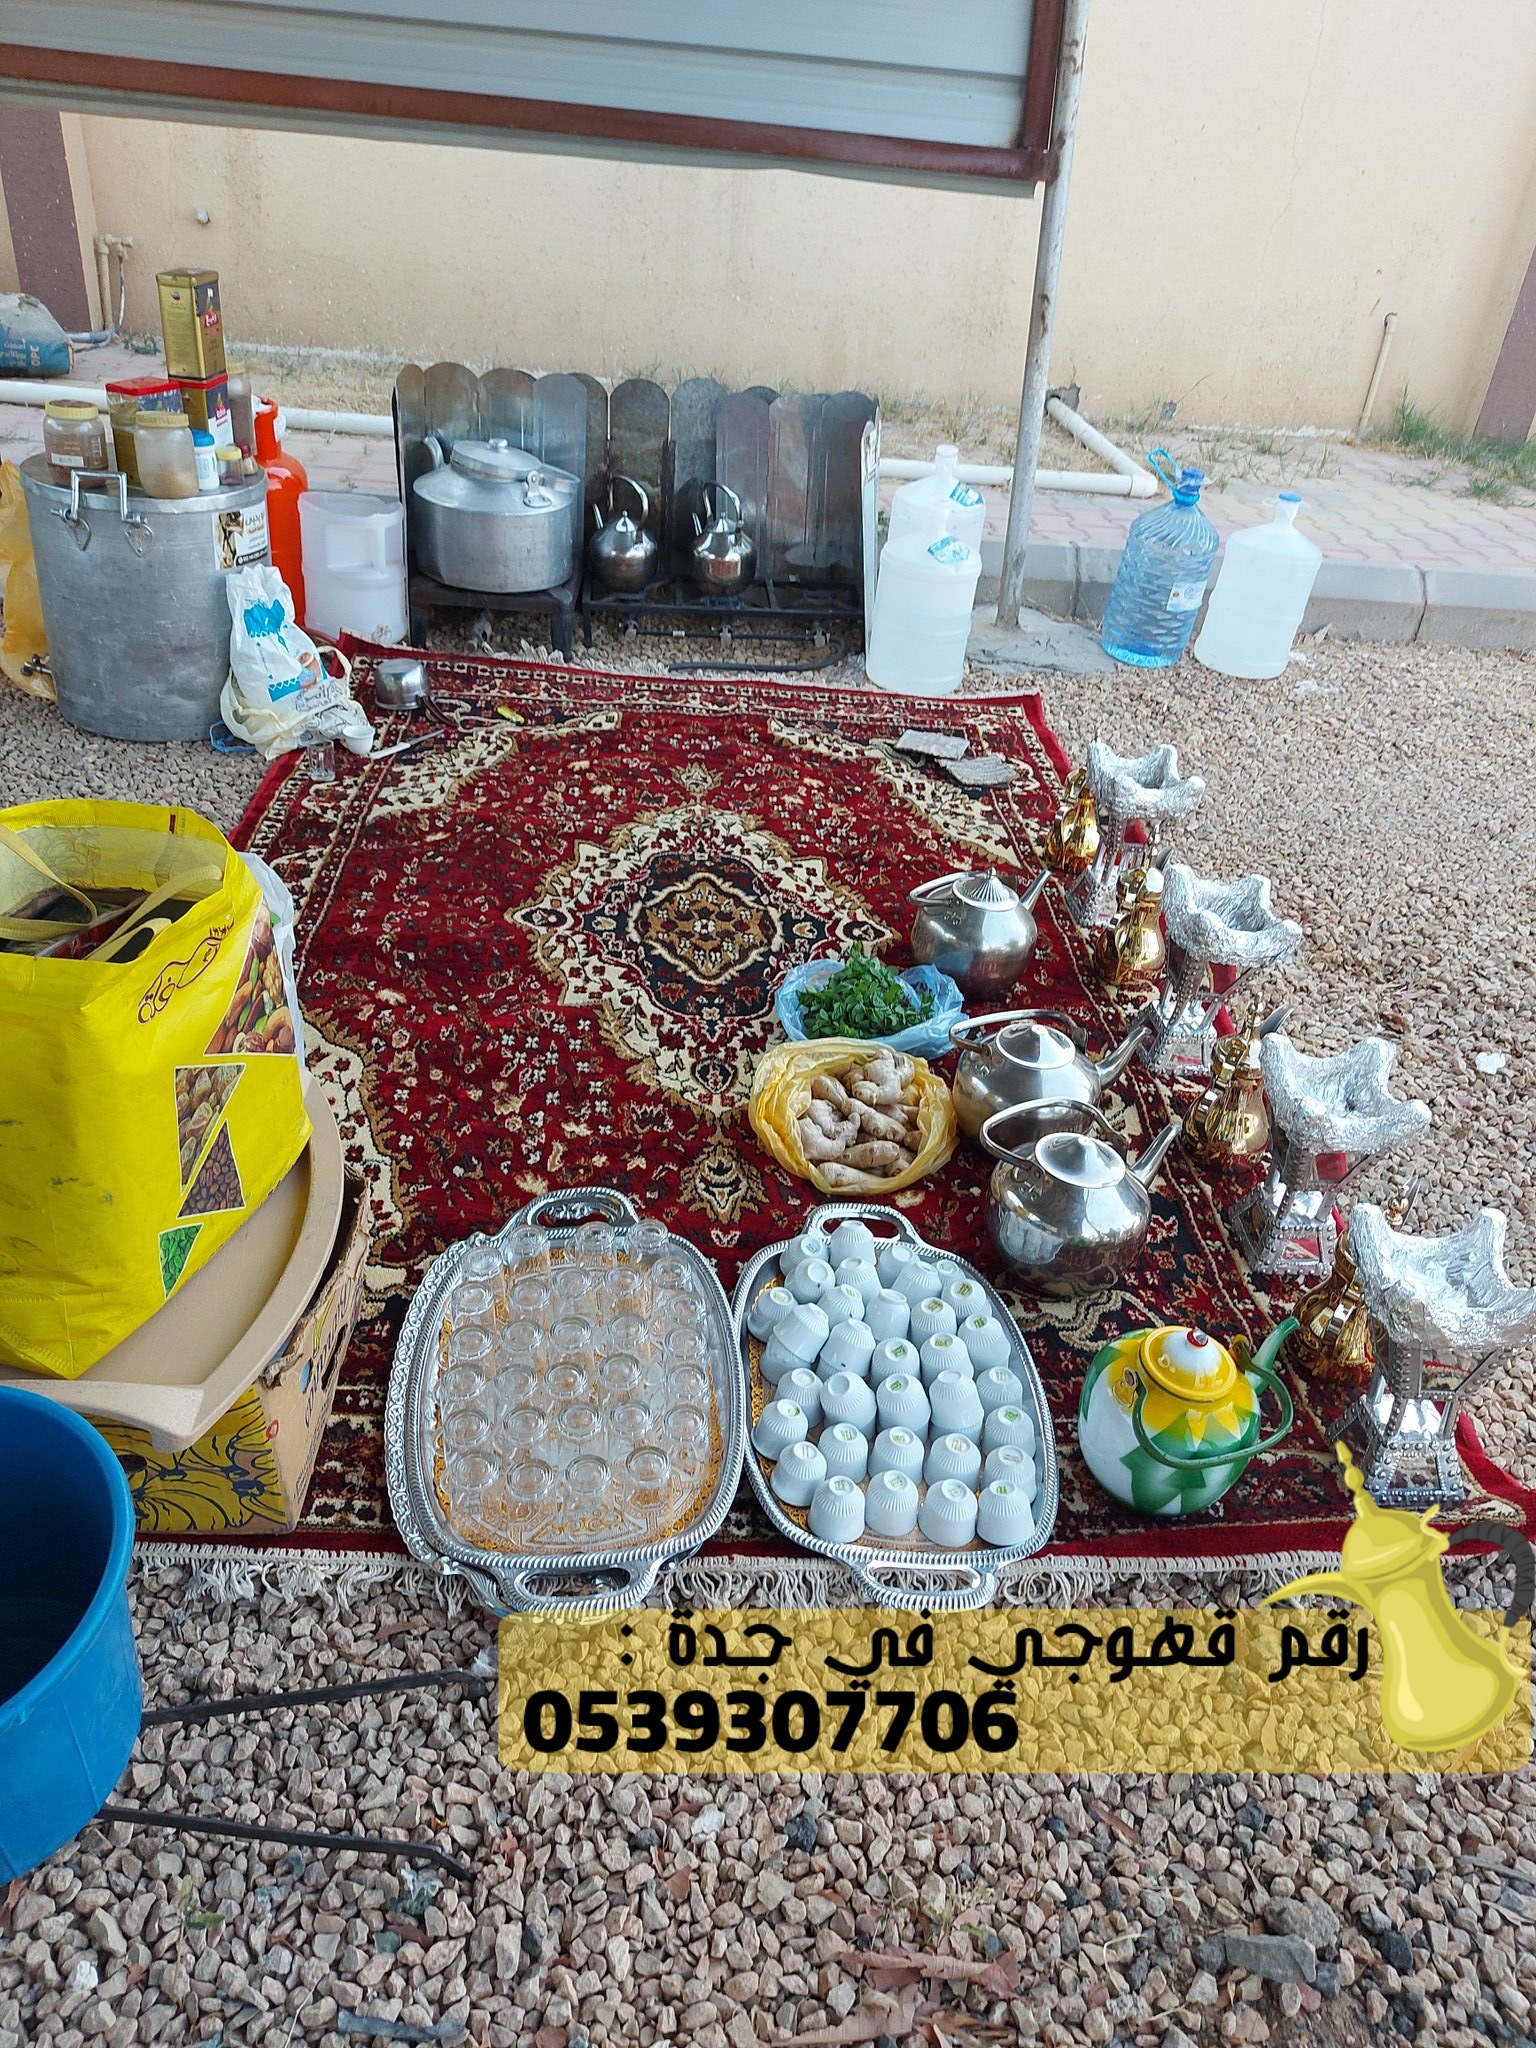 قهوجي و قهوجيات رجال ونساء في جدة, 0539307706